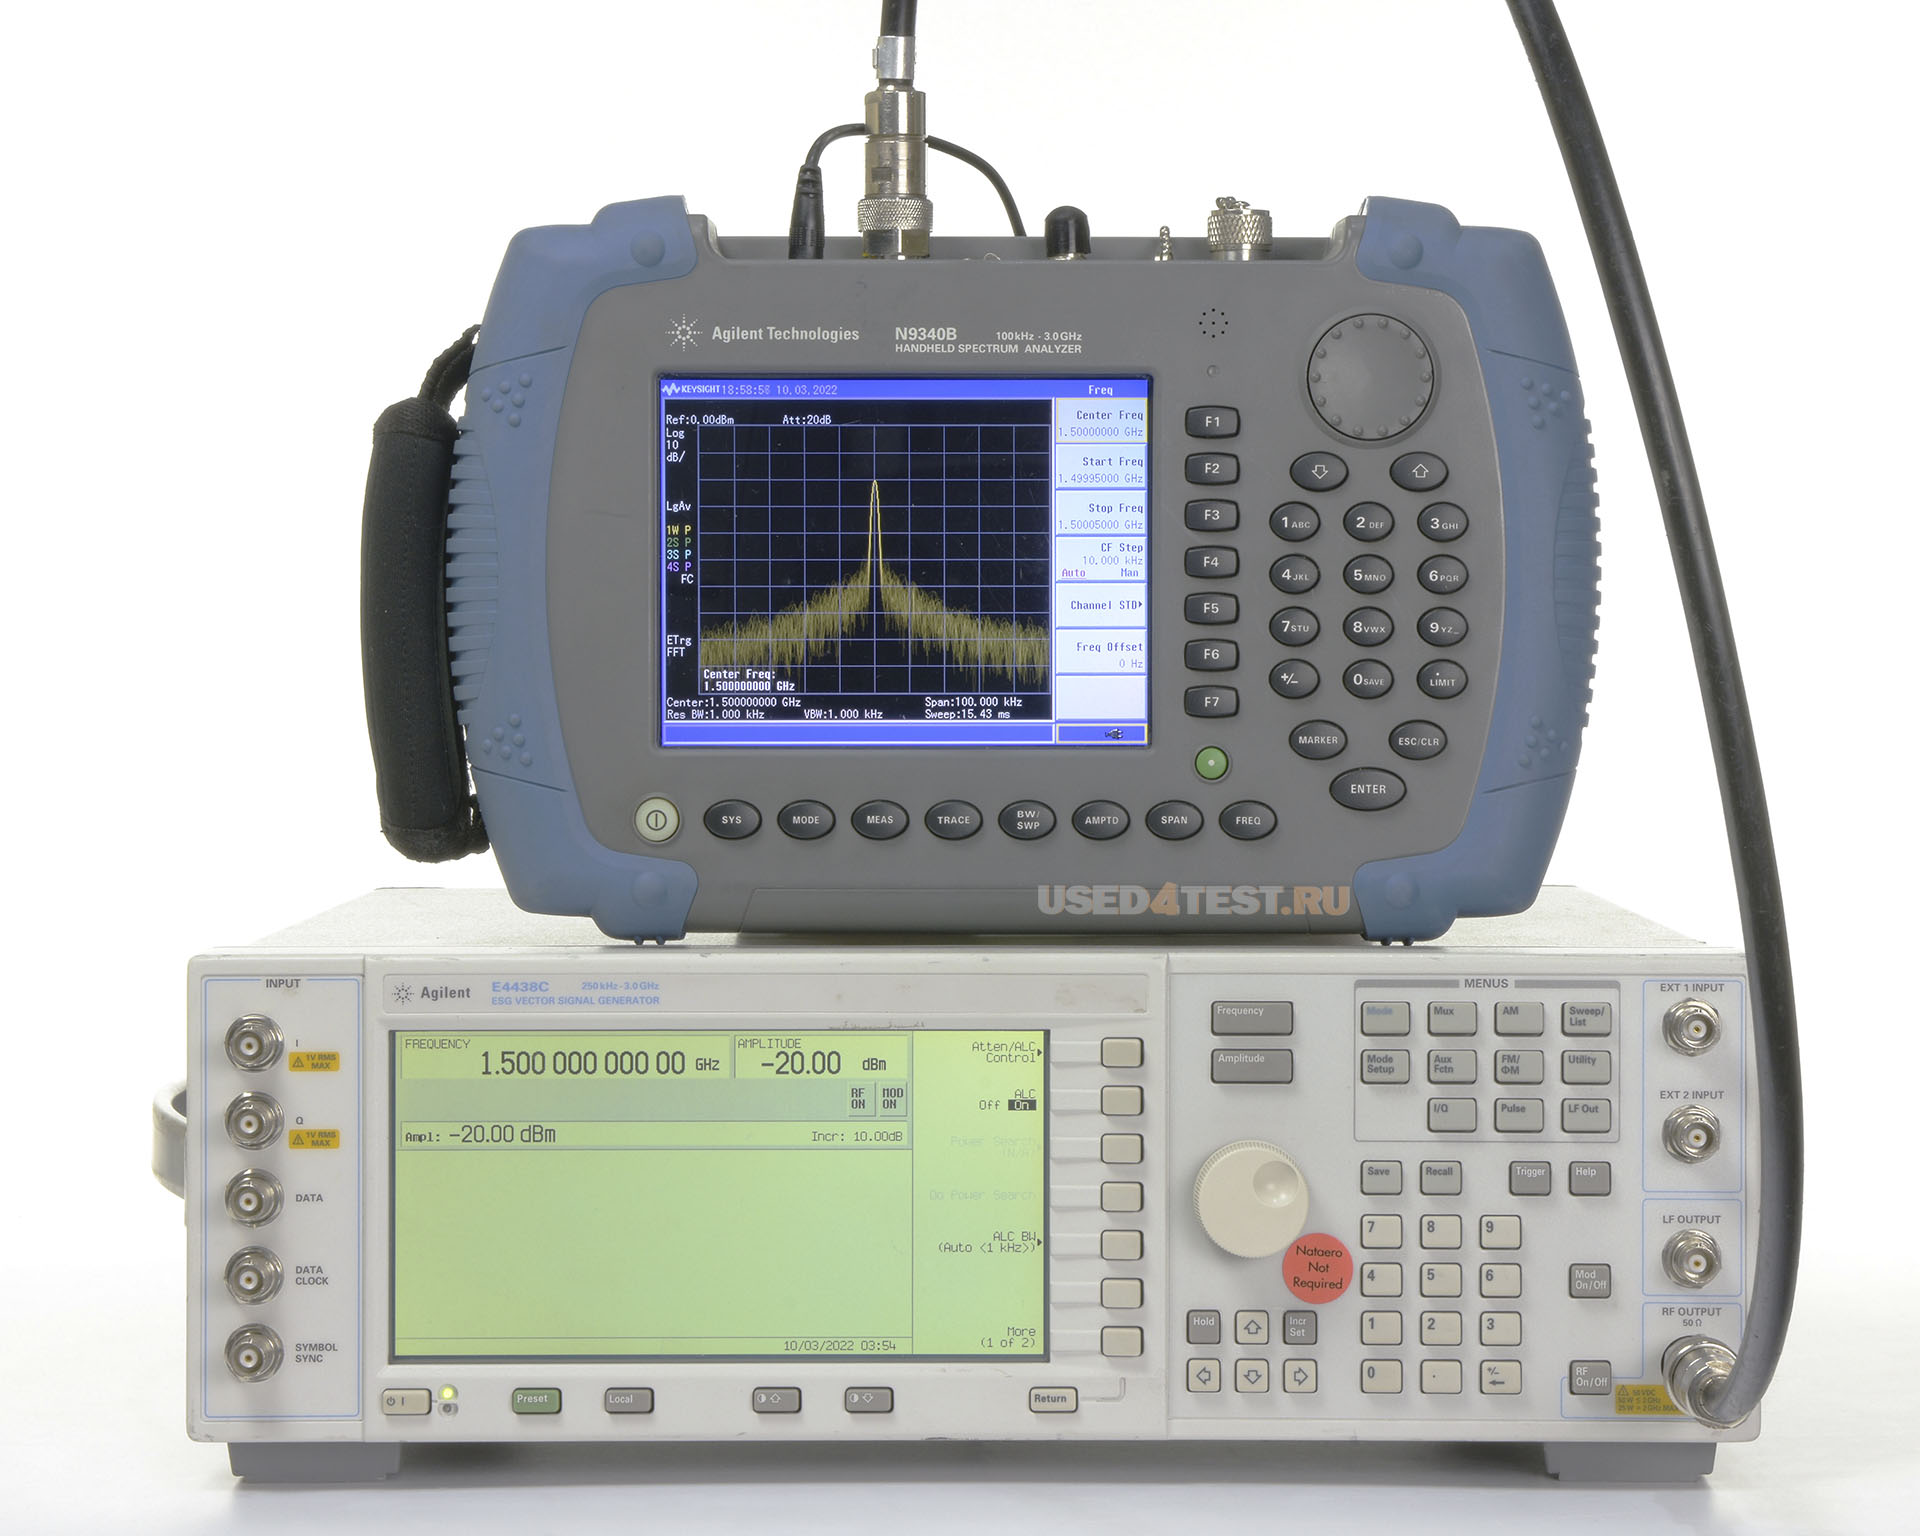 Анализатор спектра Agilent N9340Bс диапазоном от 100 кГц до 3 ГГц
 Стоимость указана в Рублях DDP Москва по безналичному расчету включая НДС 20%
